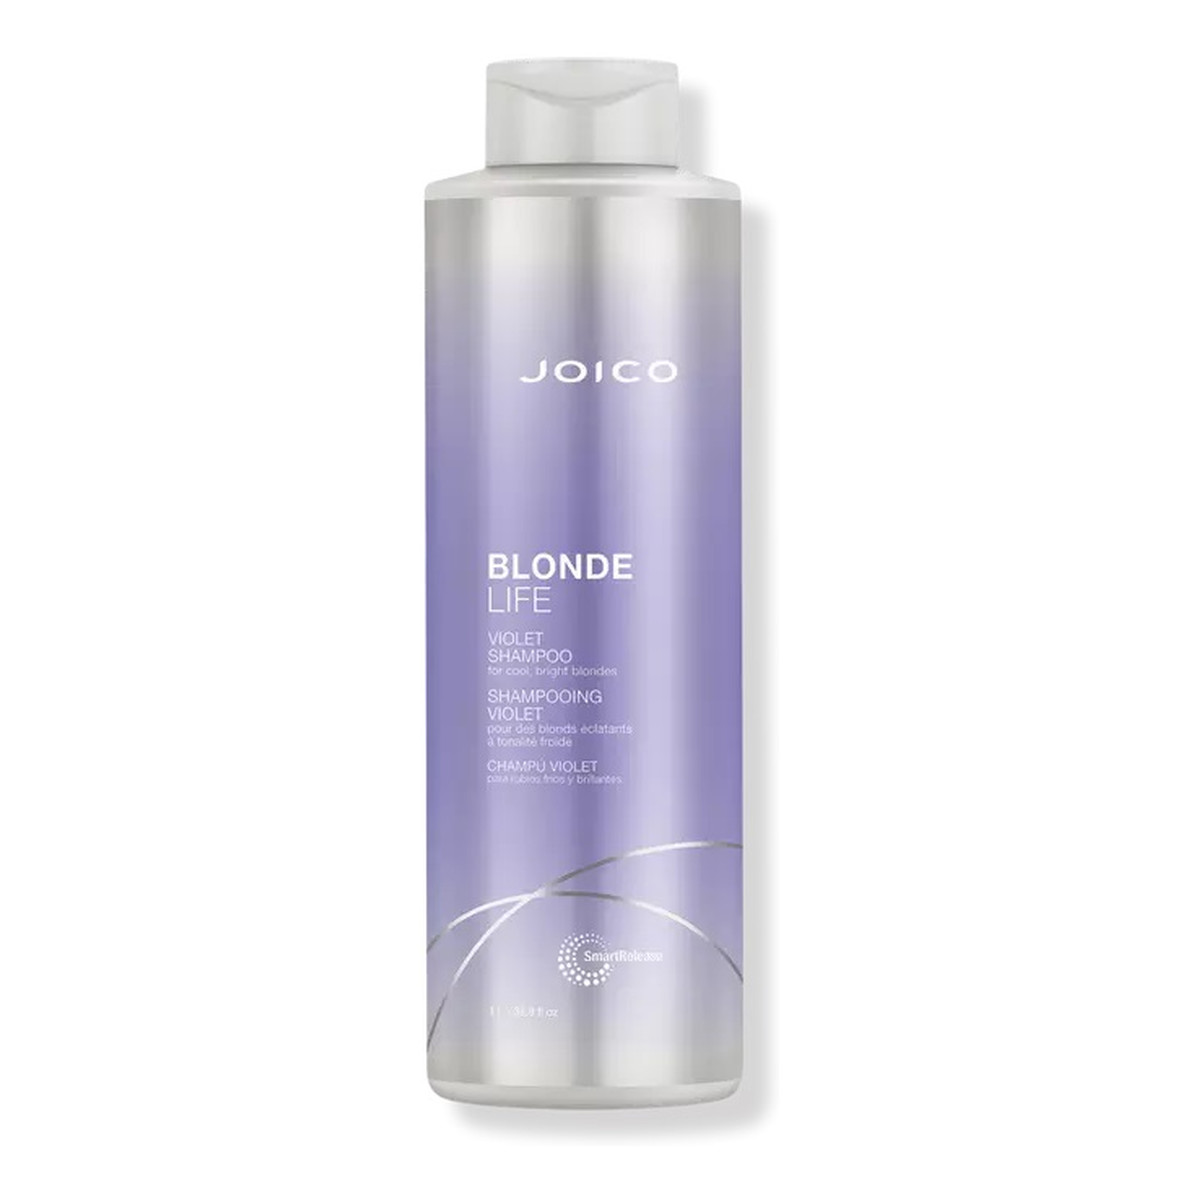 Joico Blonde life violet shampoo fioletowy szampon do włosów blond 1000ml